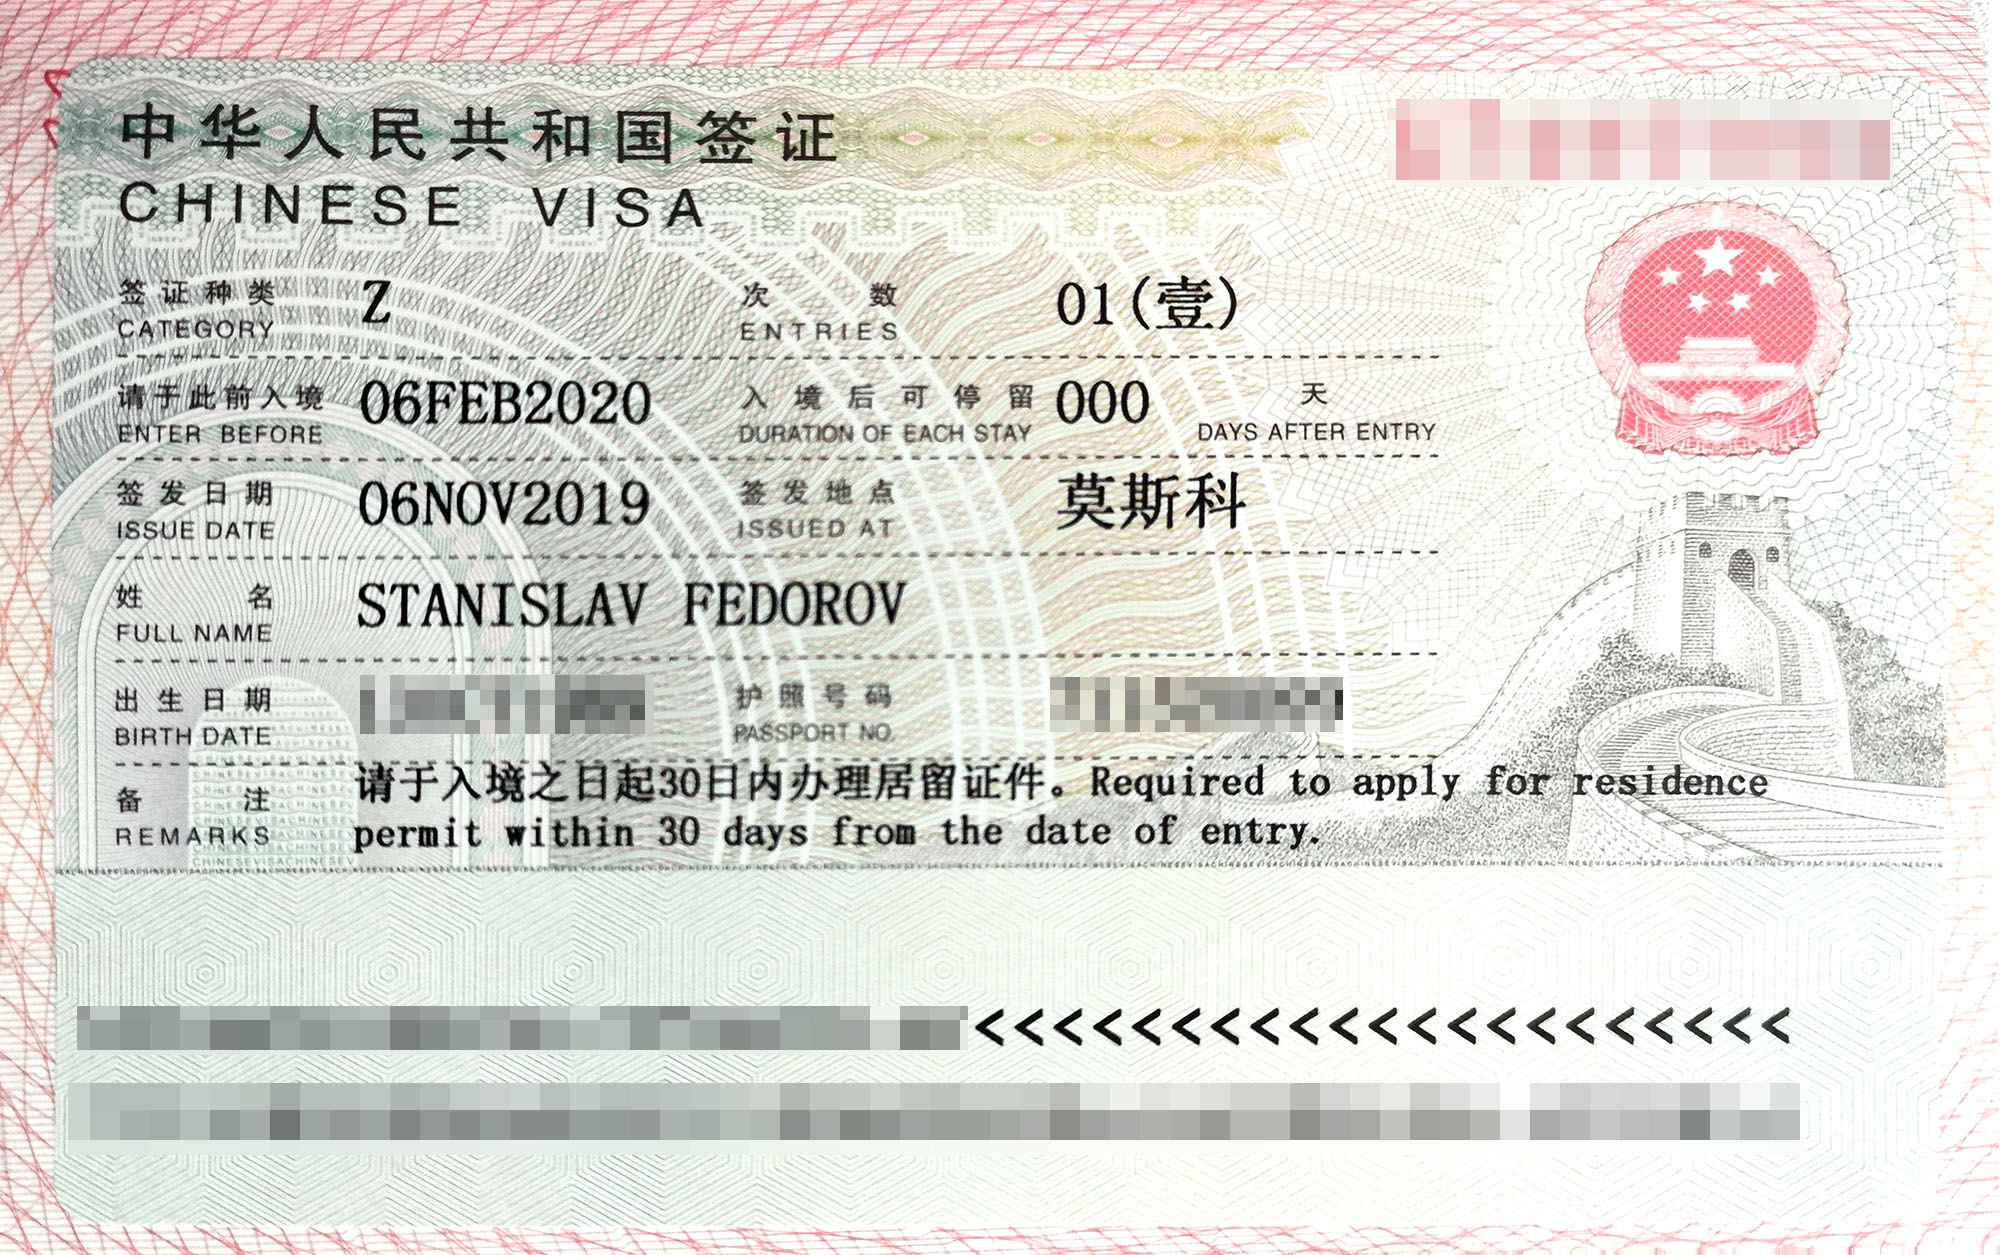 На наших визах было написано, что въехать в Китай необходимо в течение трех месяцев с момента их получения. А уже оказавшись в стране, нужно в течение 30 дней подать документы на временный вид на жительство